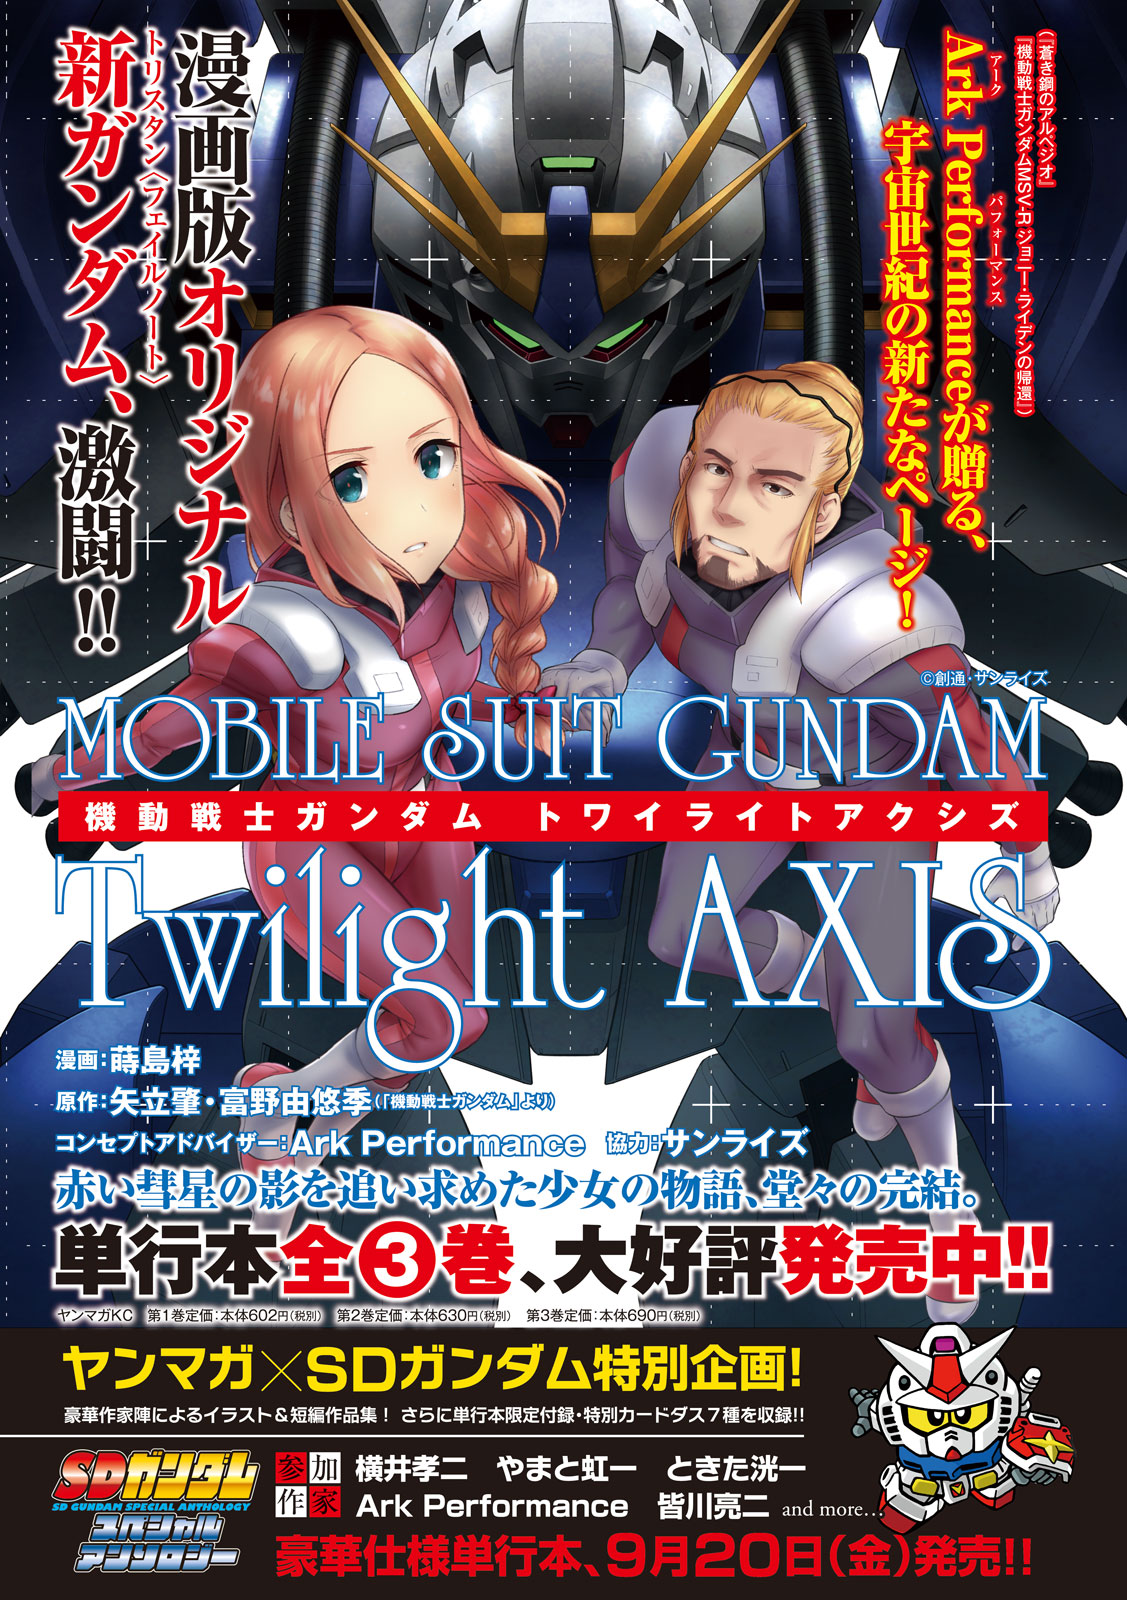 機動戦士ガンダム Twilight Axis